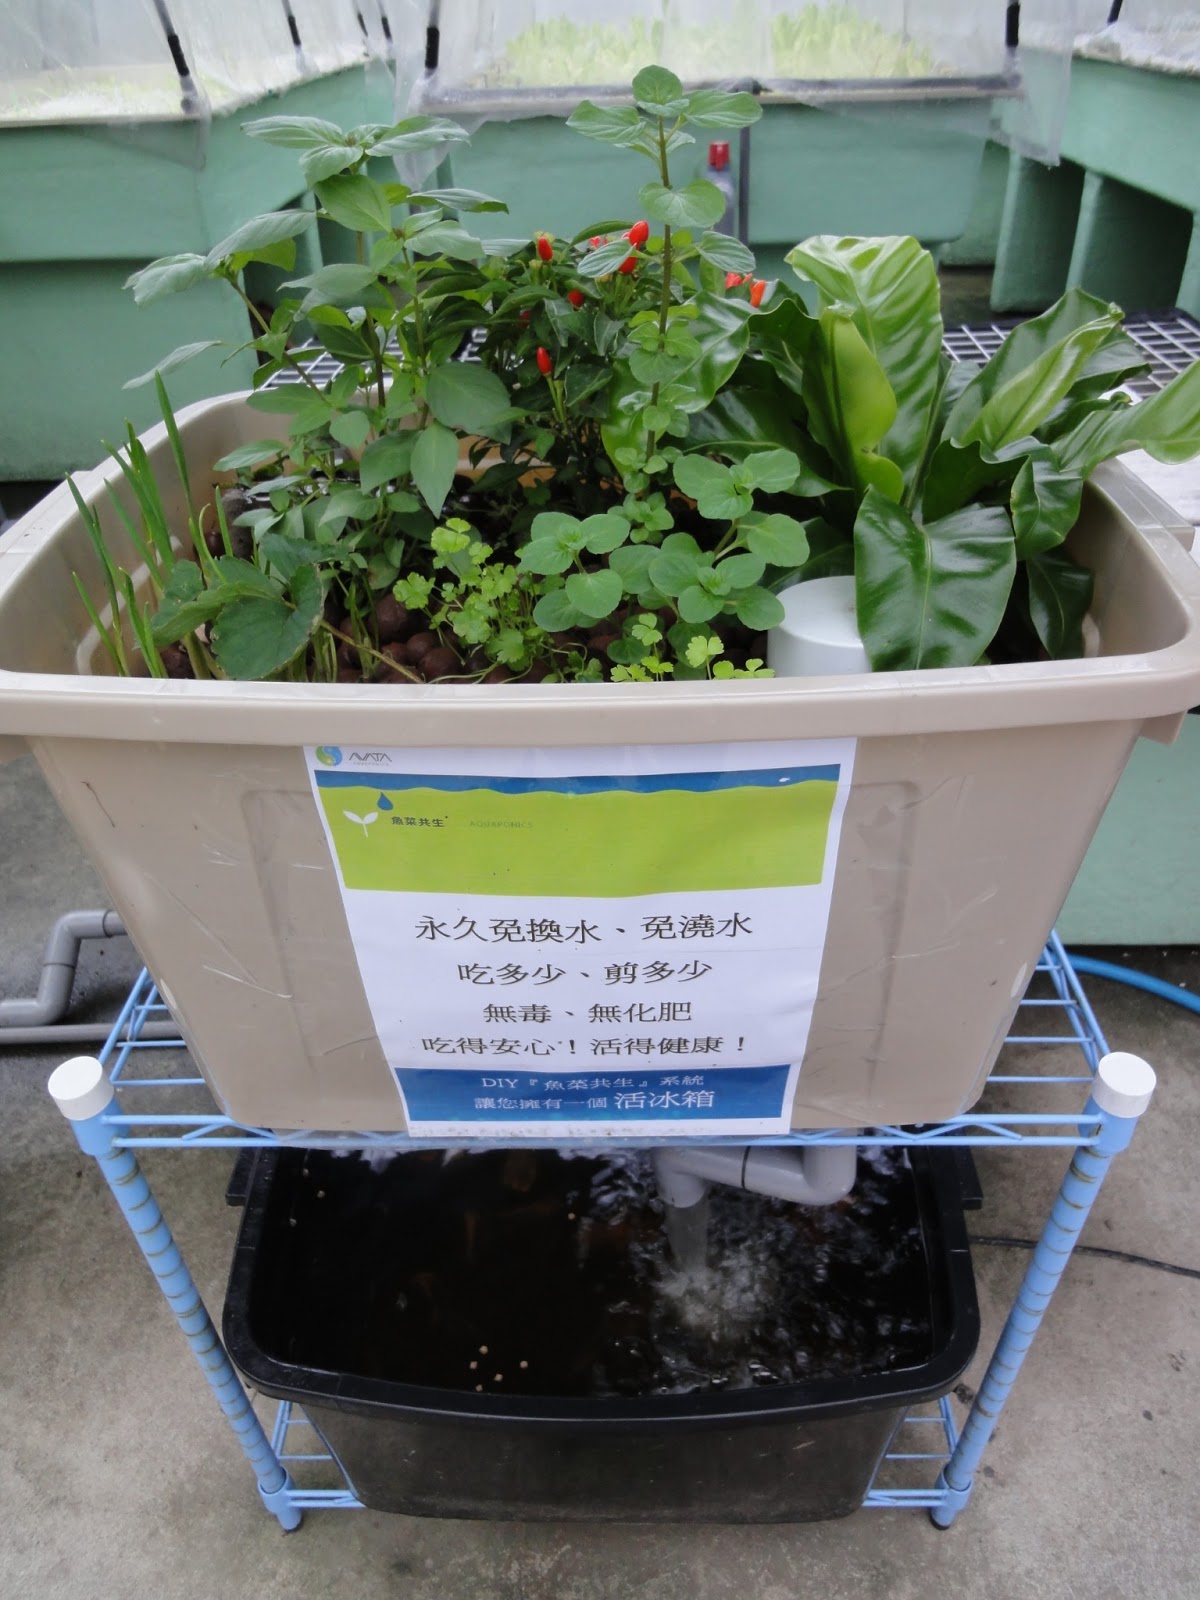 AVATA魚菜共生/Aquaponics Taiwan: 七月份「魚菜共生」訓練課程